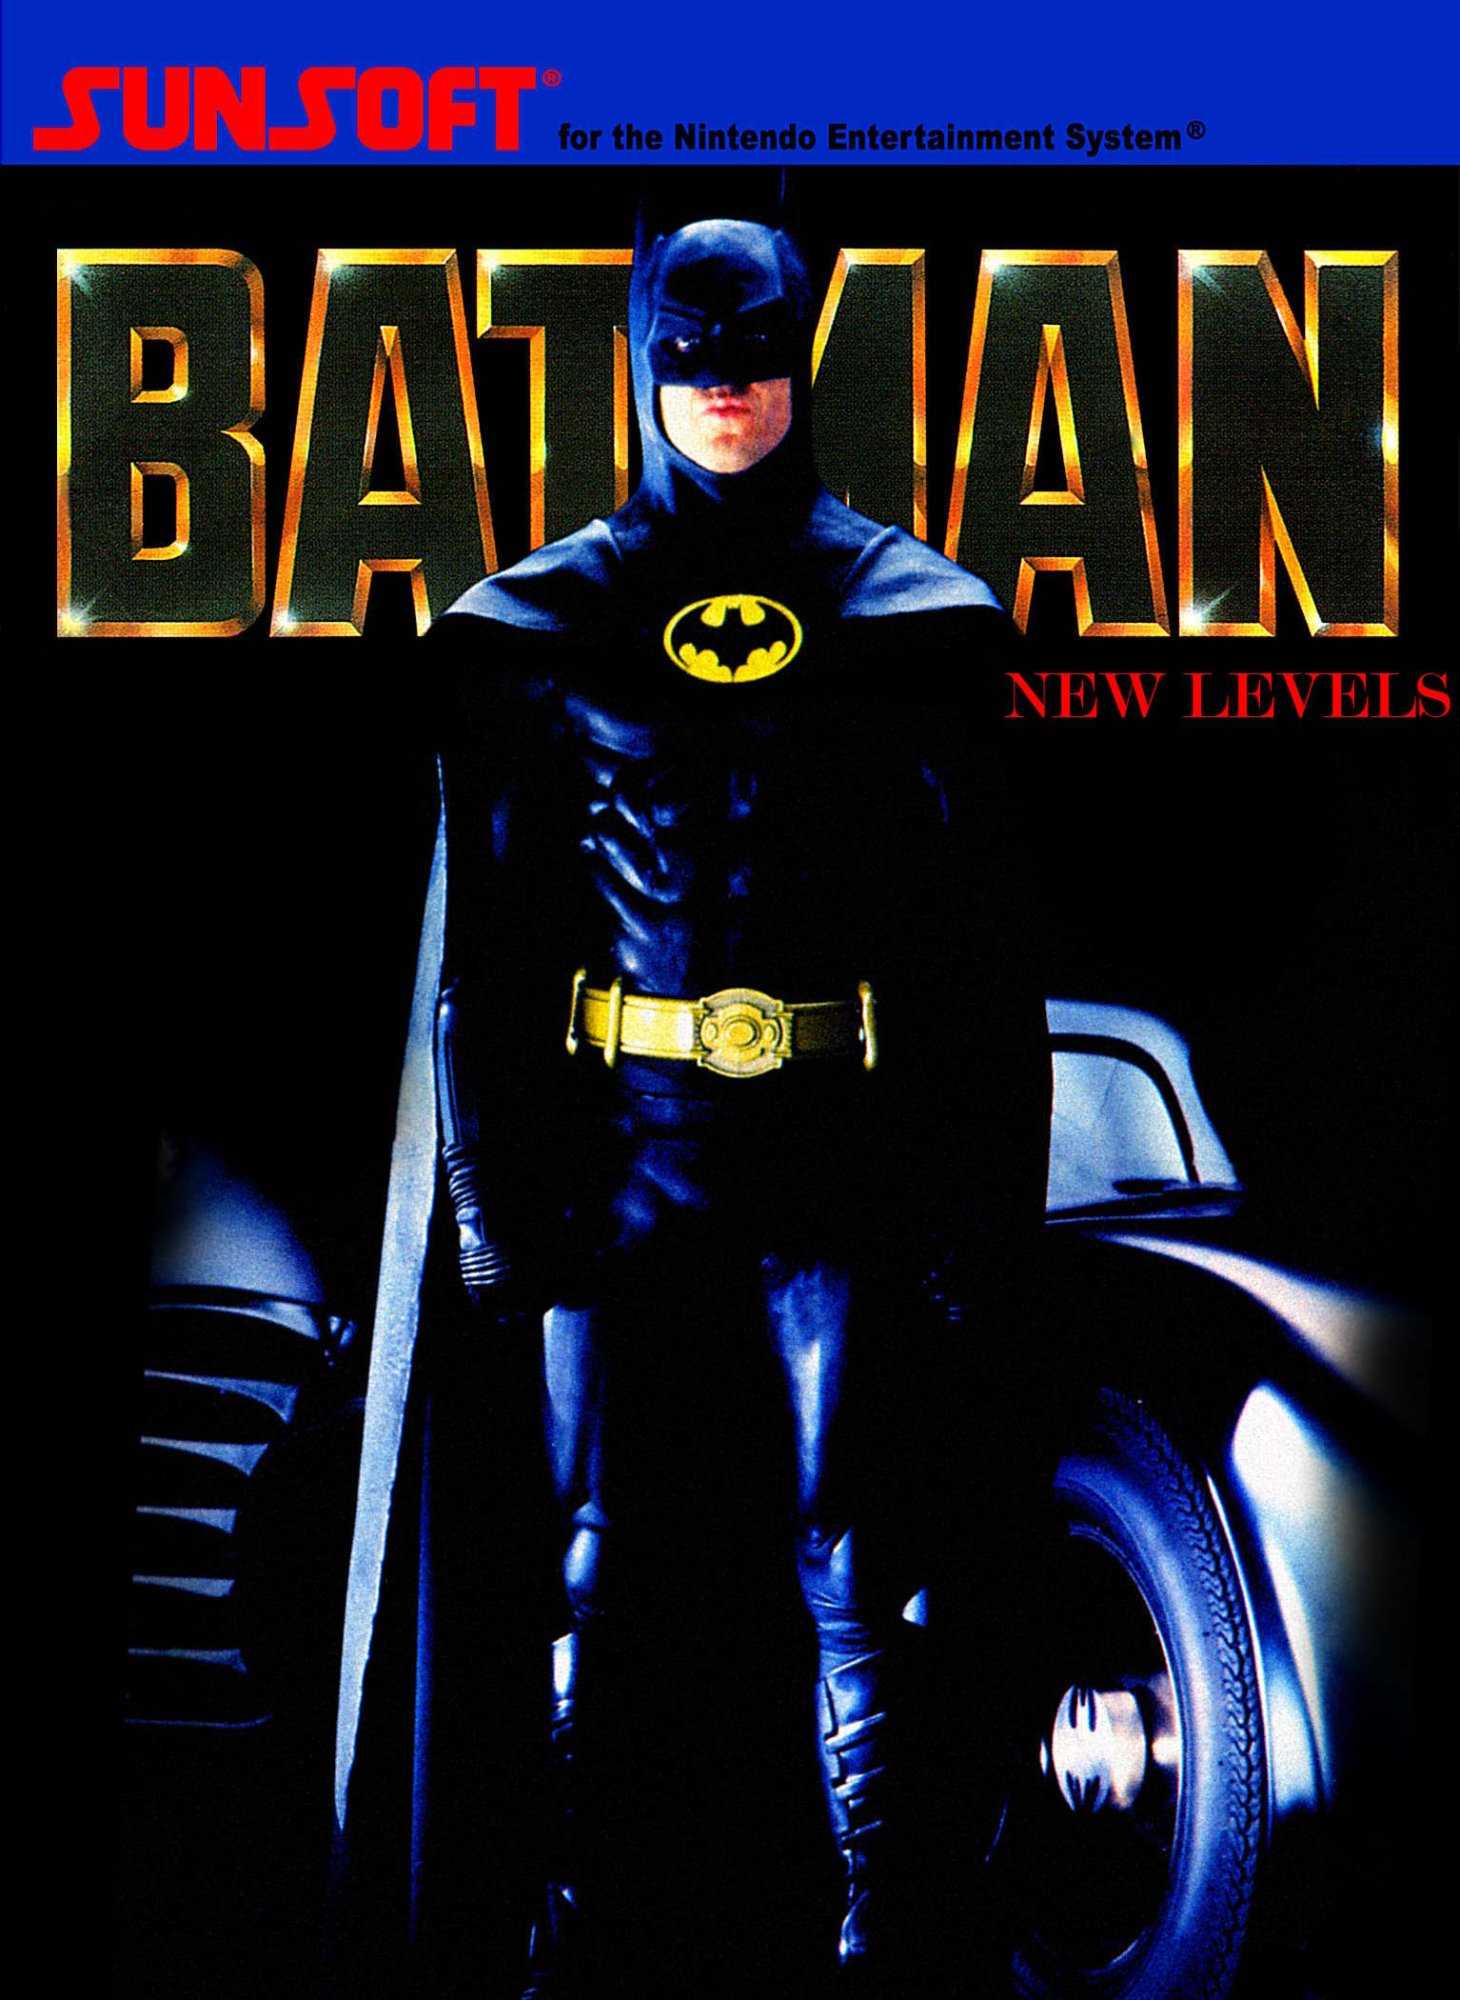 Batman: The New Levels